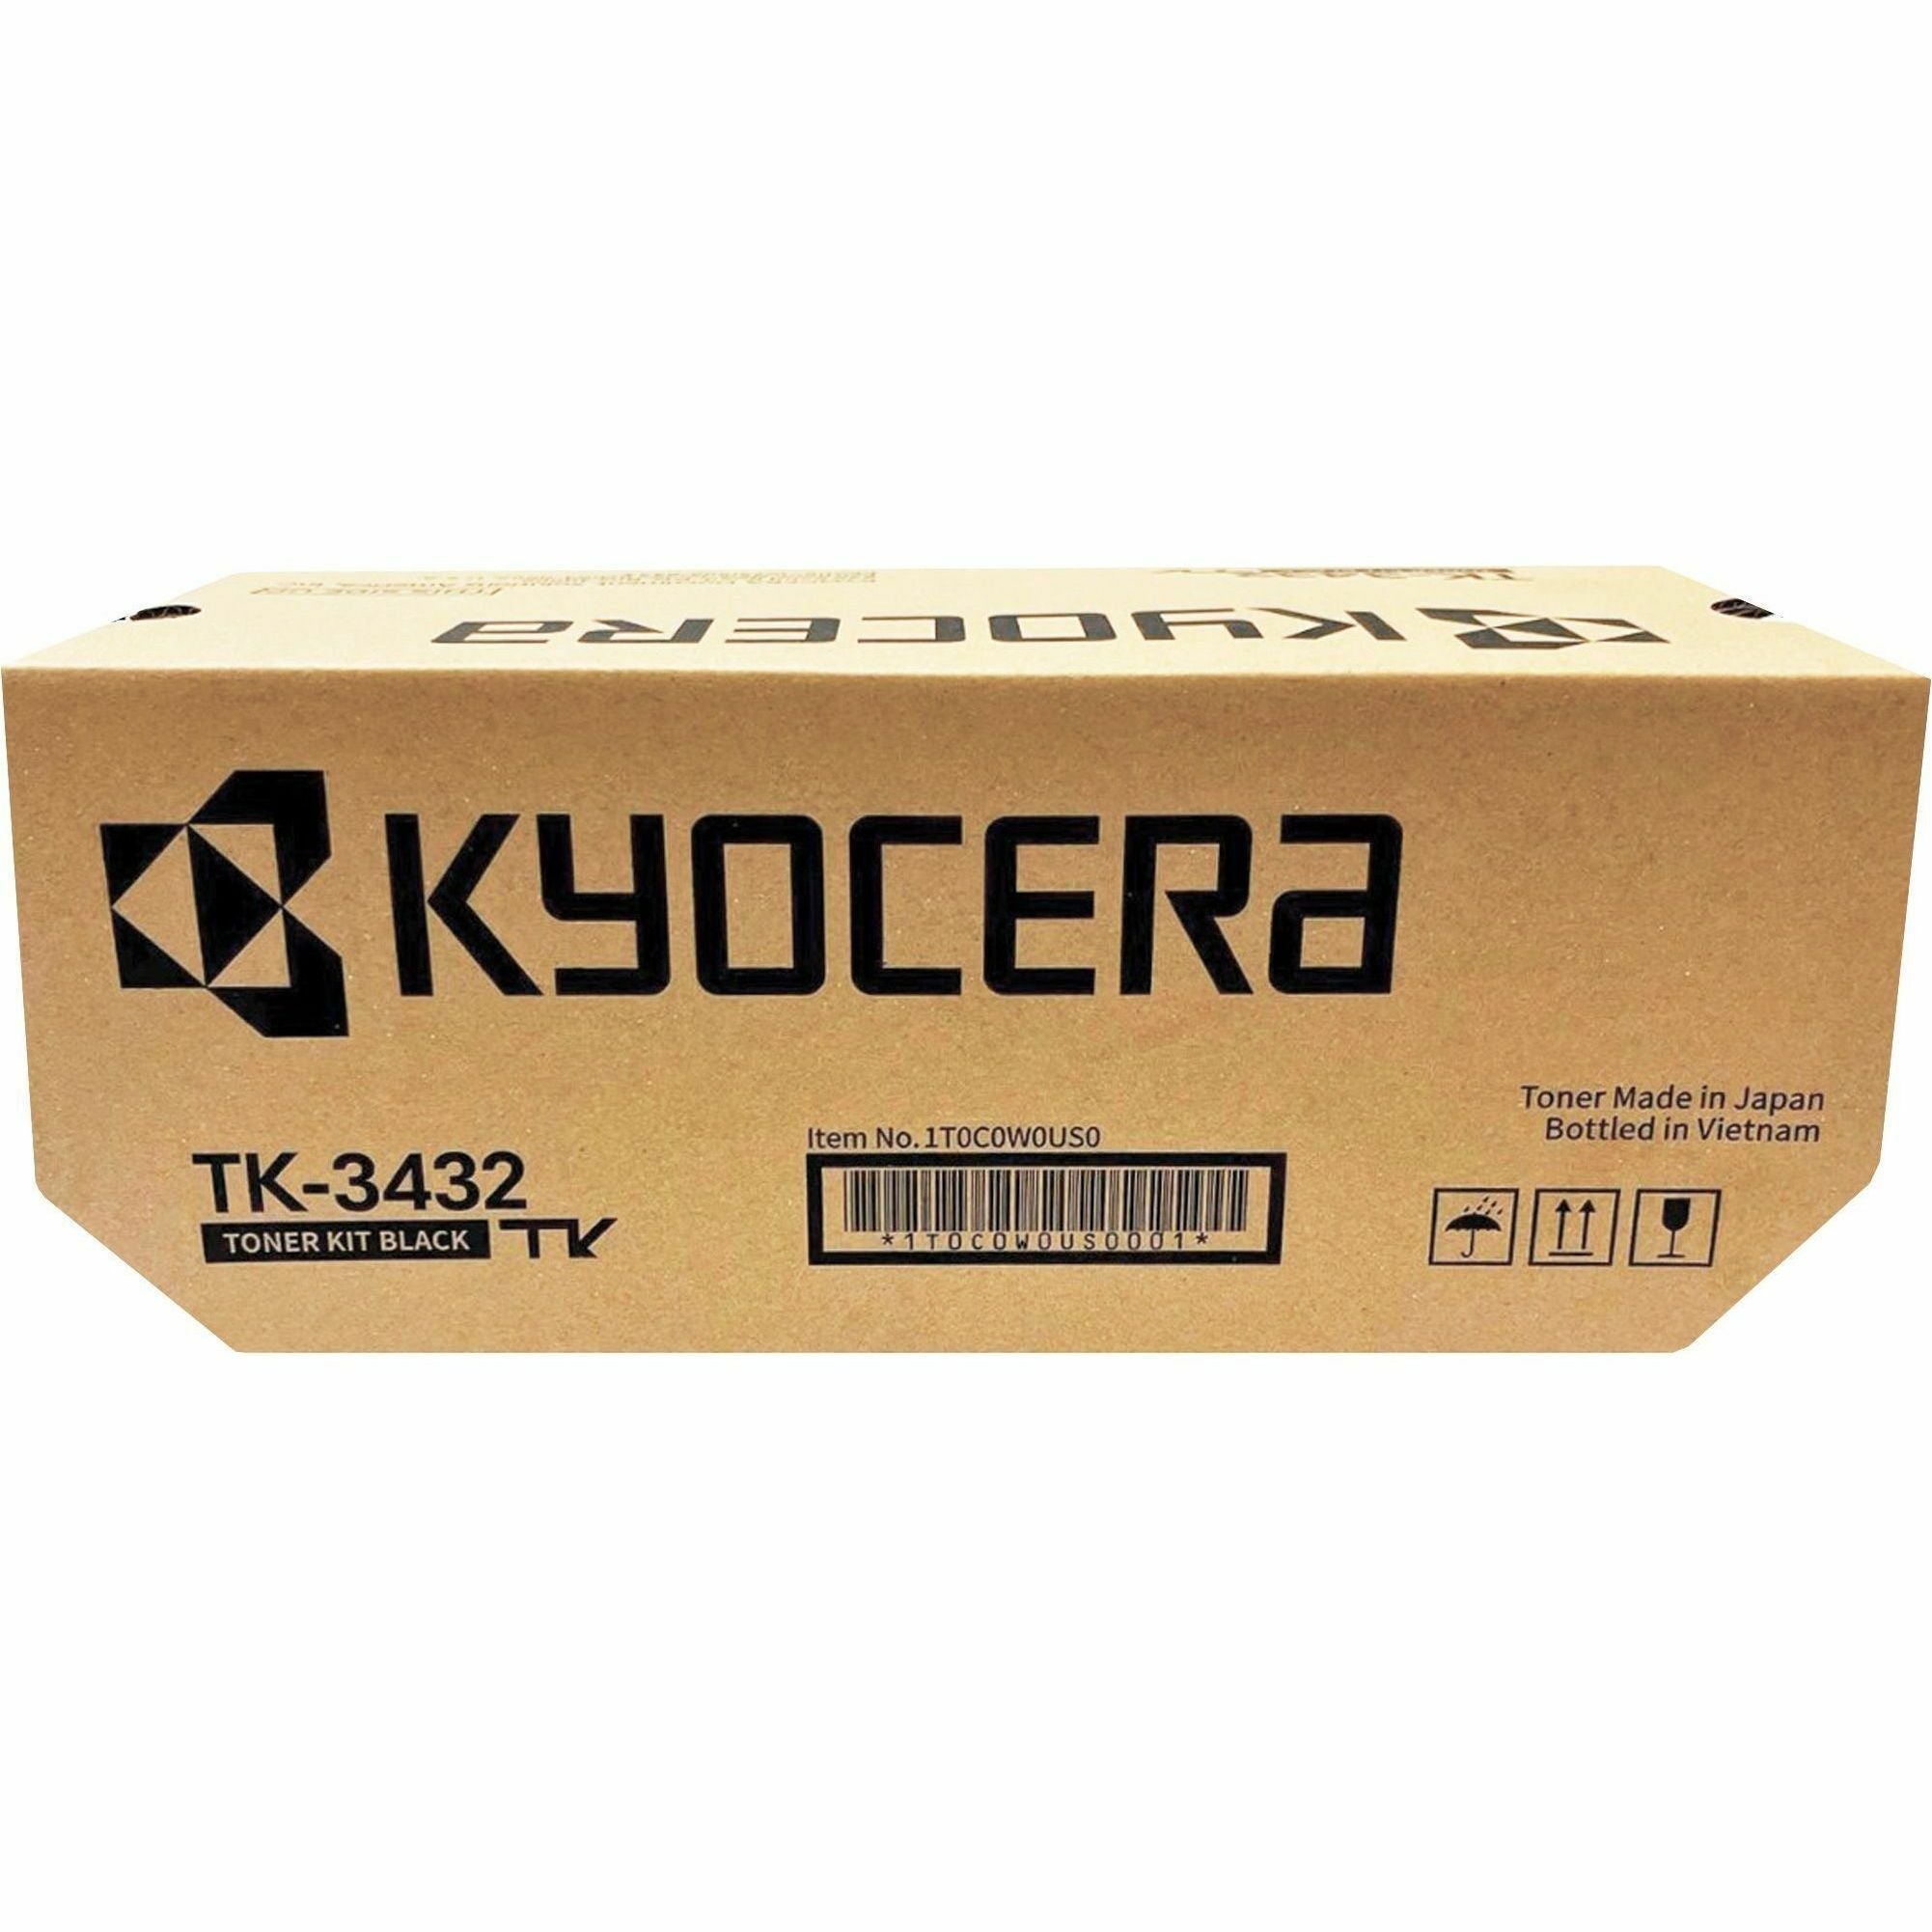 Kyocera TK-3432 Original Laser Toner Cartridge - Black - 1 Each - 25000 Pages - 2